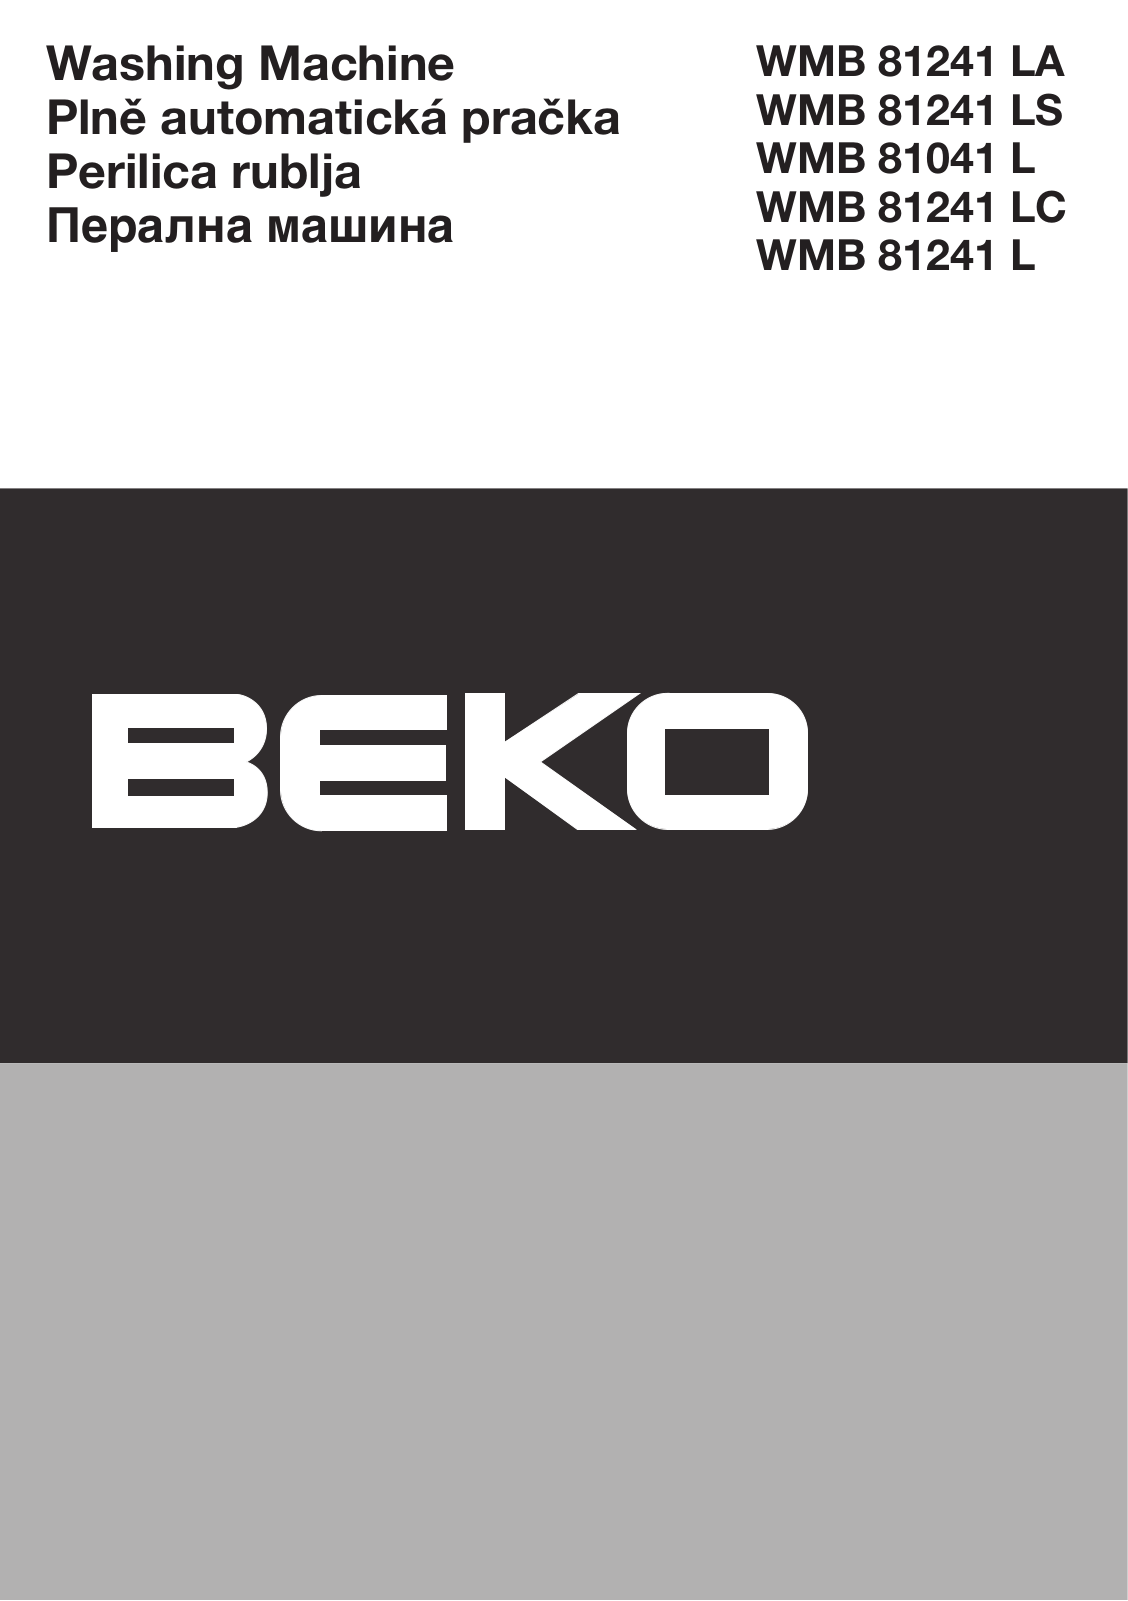 Beko WMB 81241 LA, WMB 81241 LS, WMB 81041 L, WMB 81241 LC, WMB 81241 L User manual